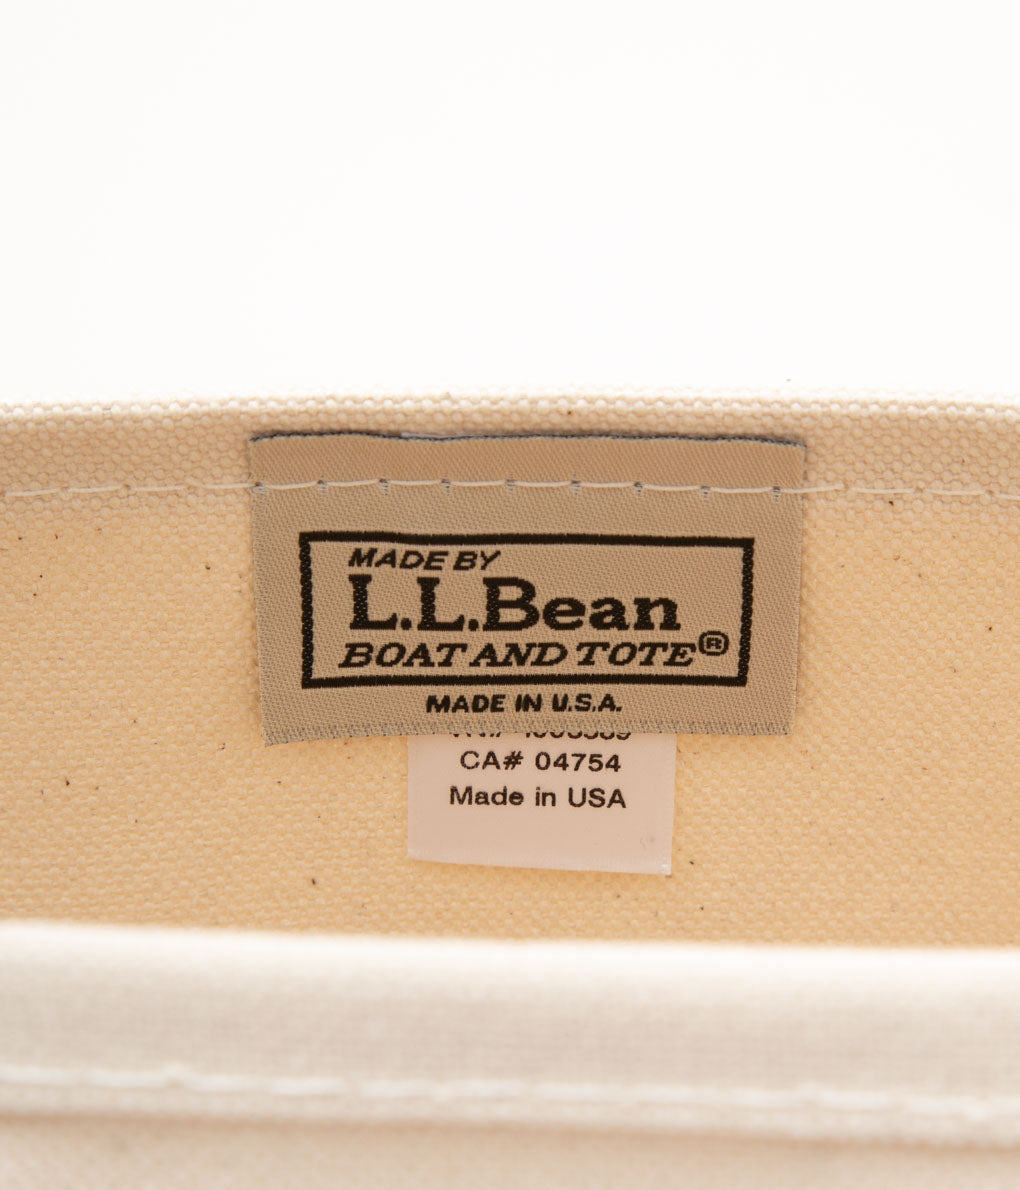 L.L. BEAN "BOAT&TOTE BAG SMALL"(MAUVE)